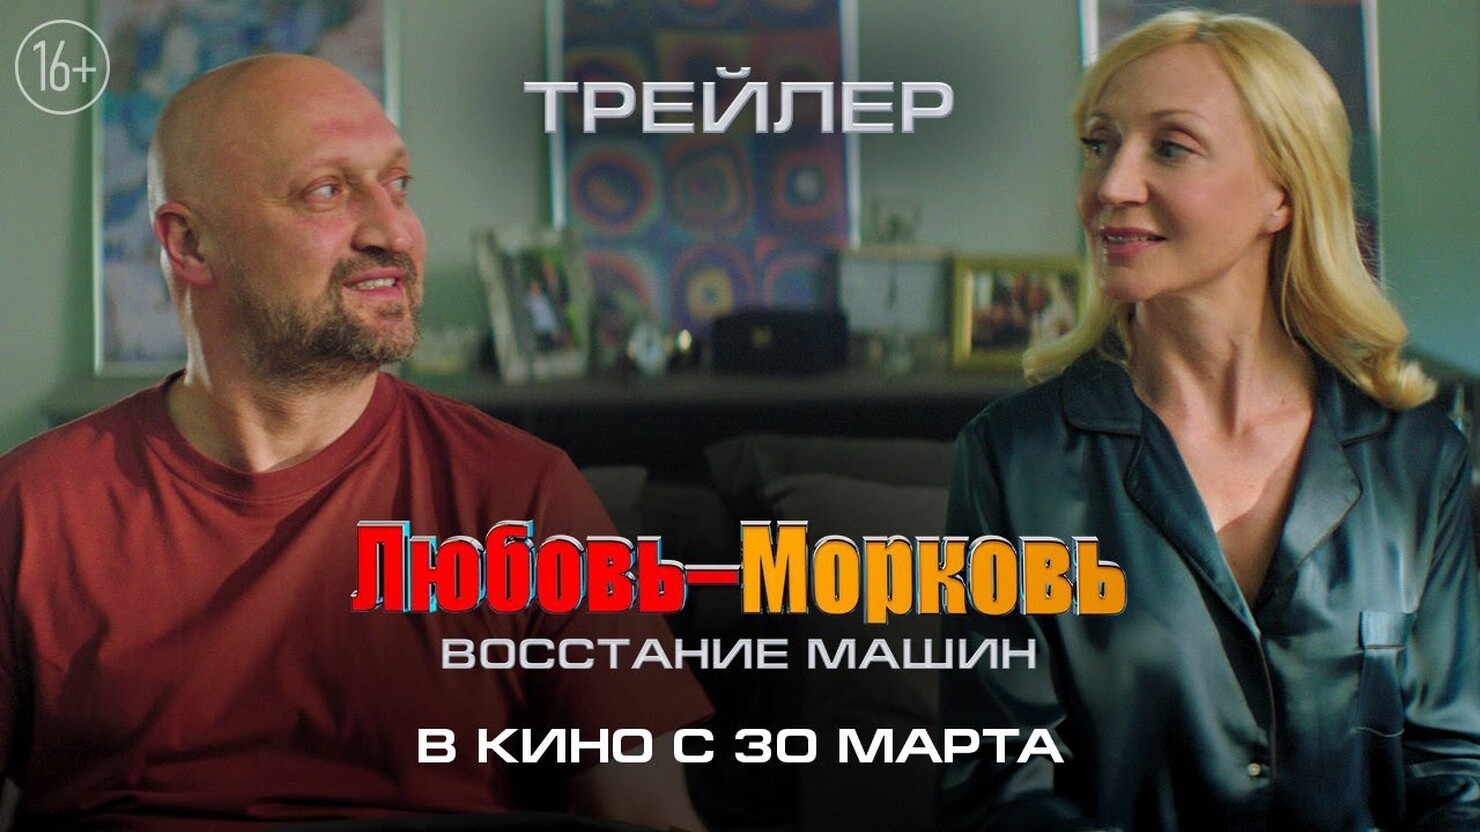 Парад кринжа: Гоша Куценко и Кристина Орбакайте в трейлере комедии "Любовь-Морковь. Восстание машин"